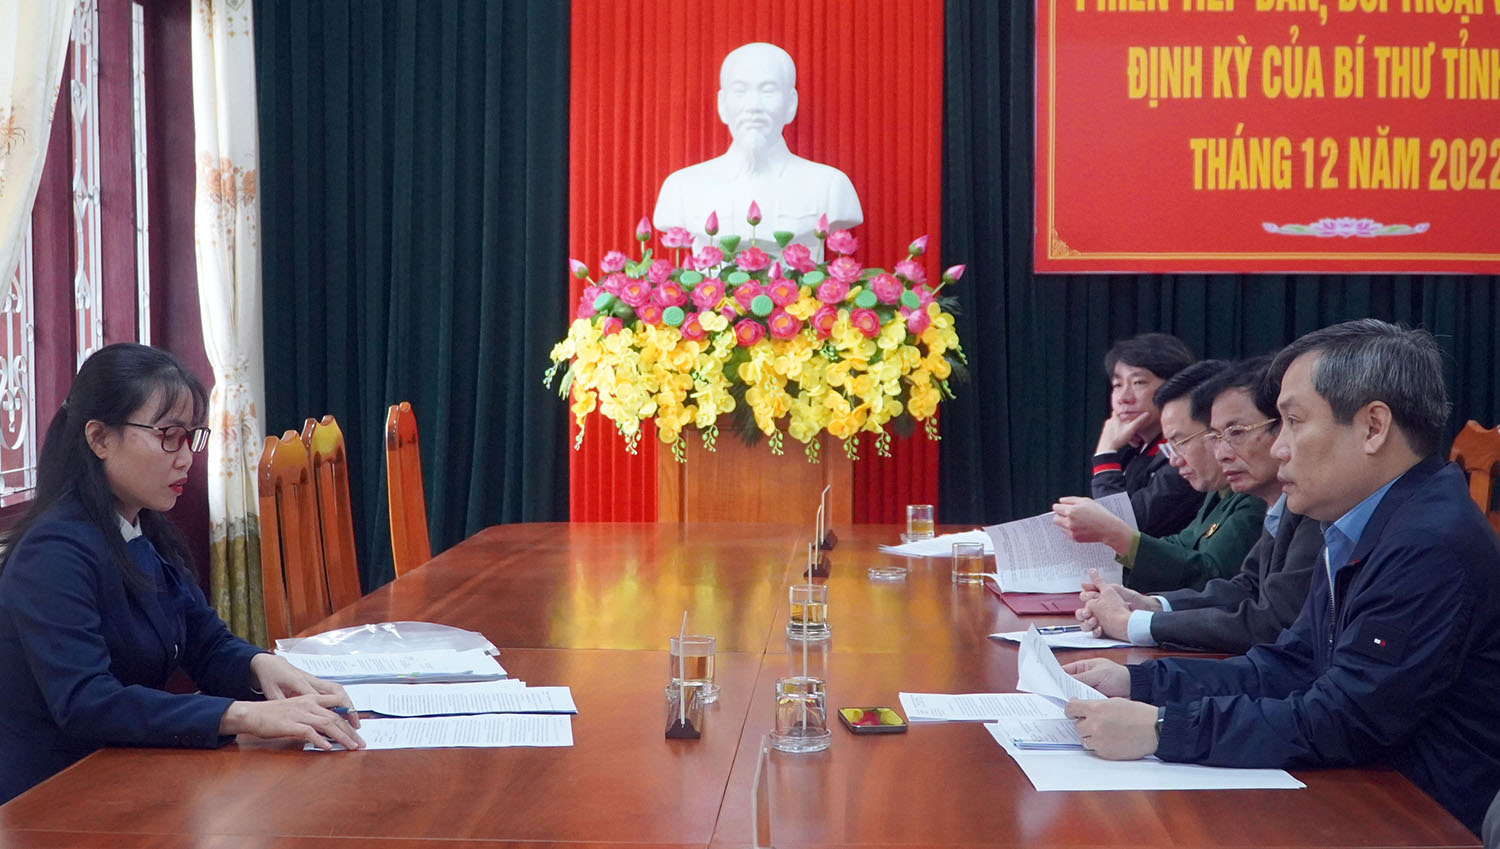 Đồng chí Bí thư Tỉnh ủy Vũ Đại Thắng trả lời nội dung kiến nghị của bà Lưu Thị Như Tình